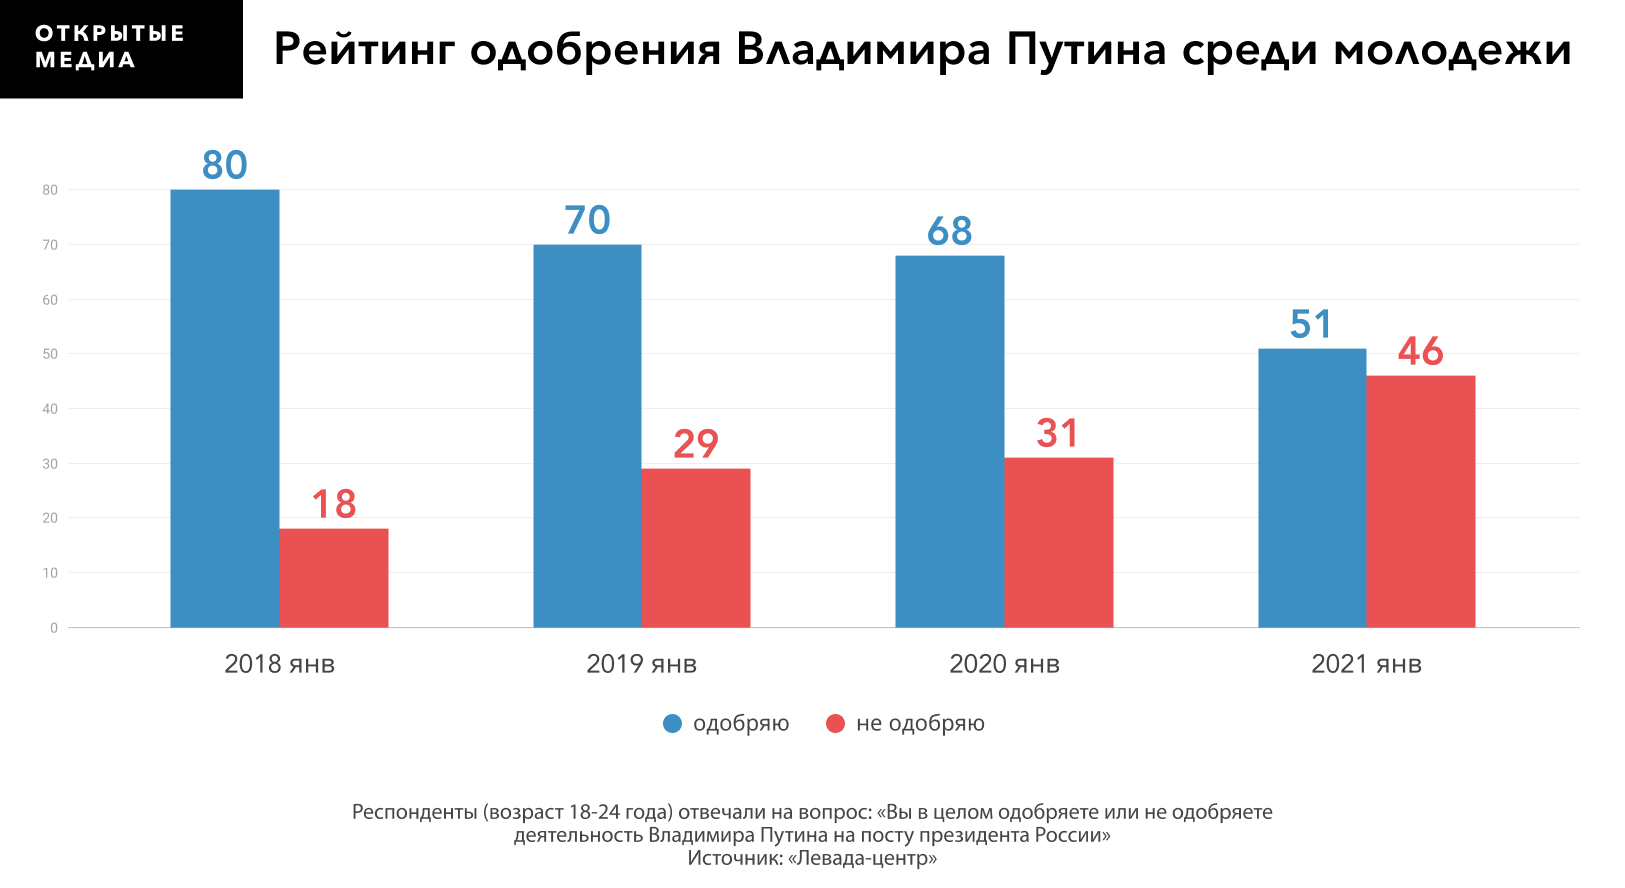 Процент проголосовавших в санкт петербурге